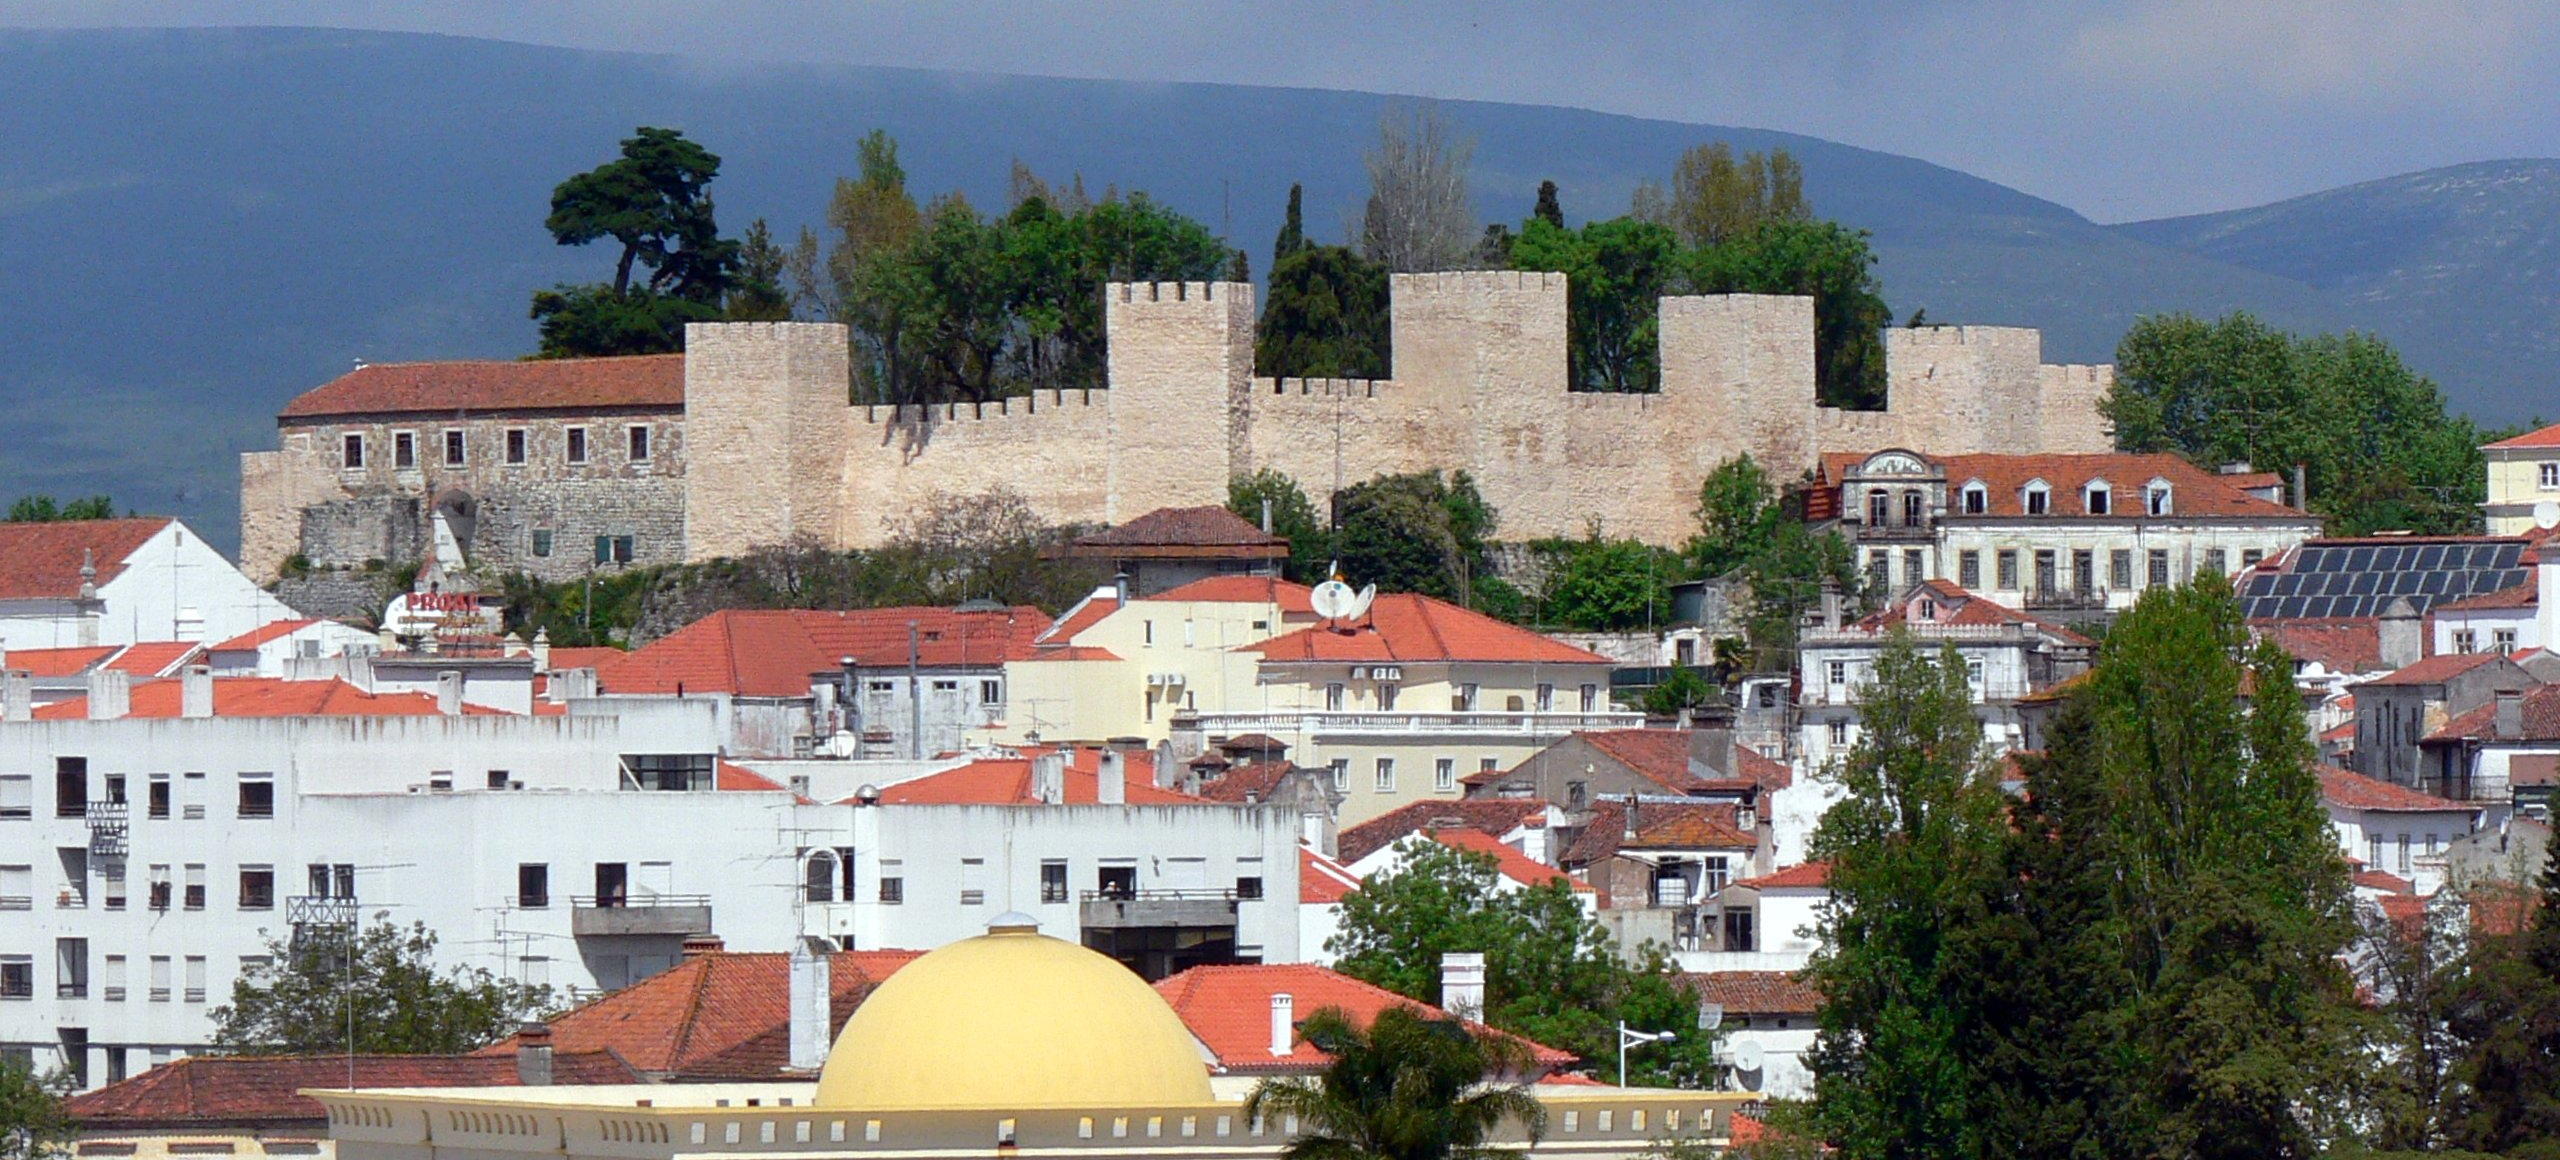 Castelo de Torres Novas cropped